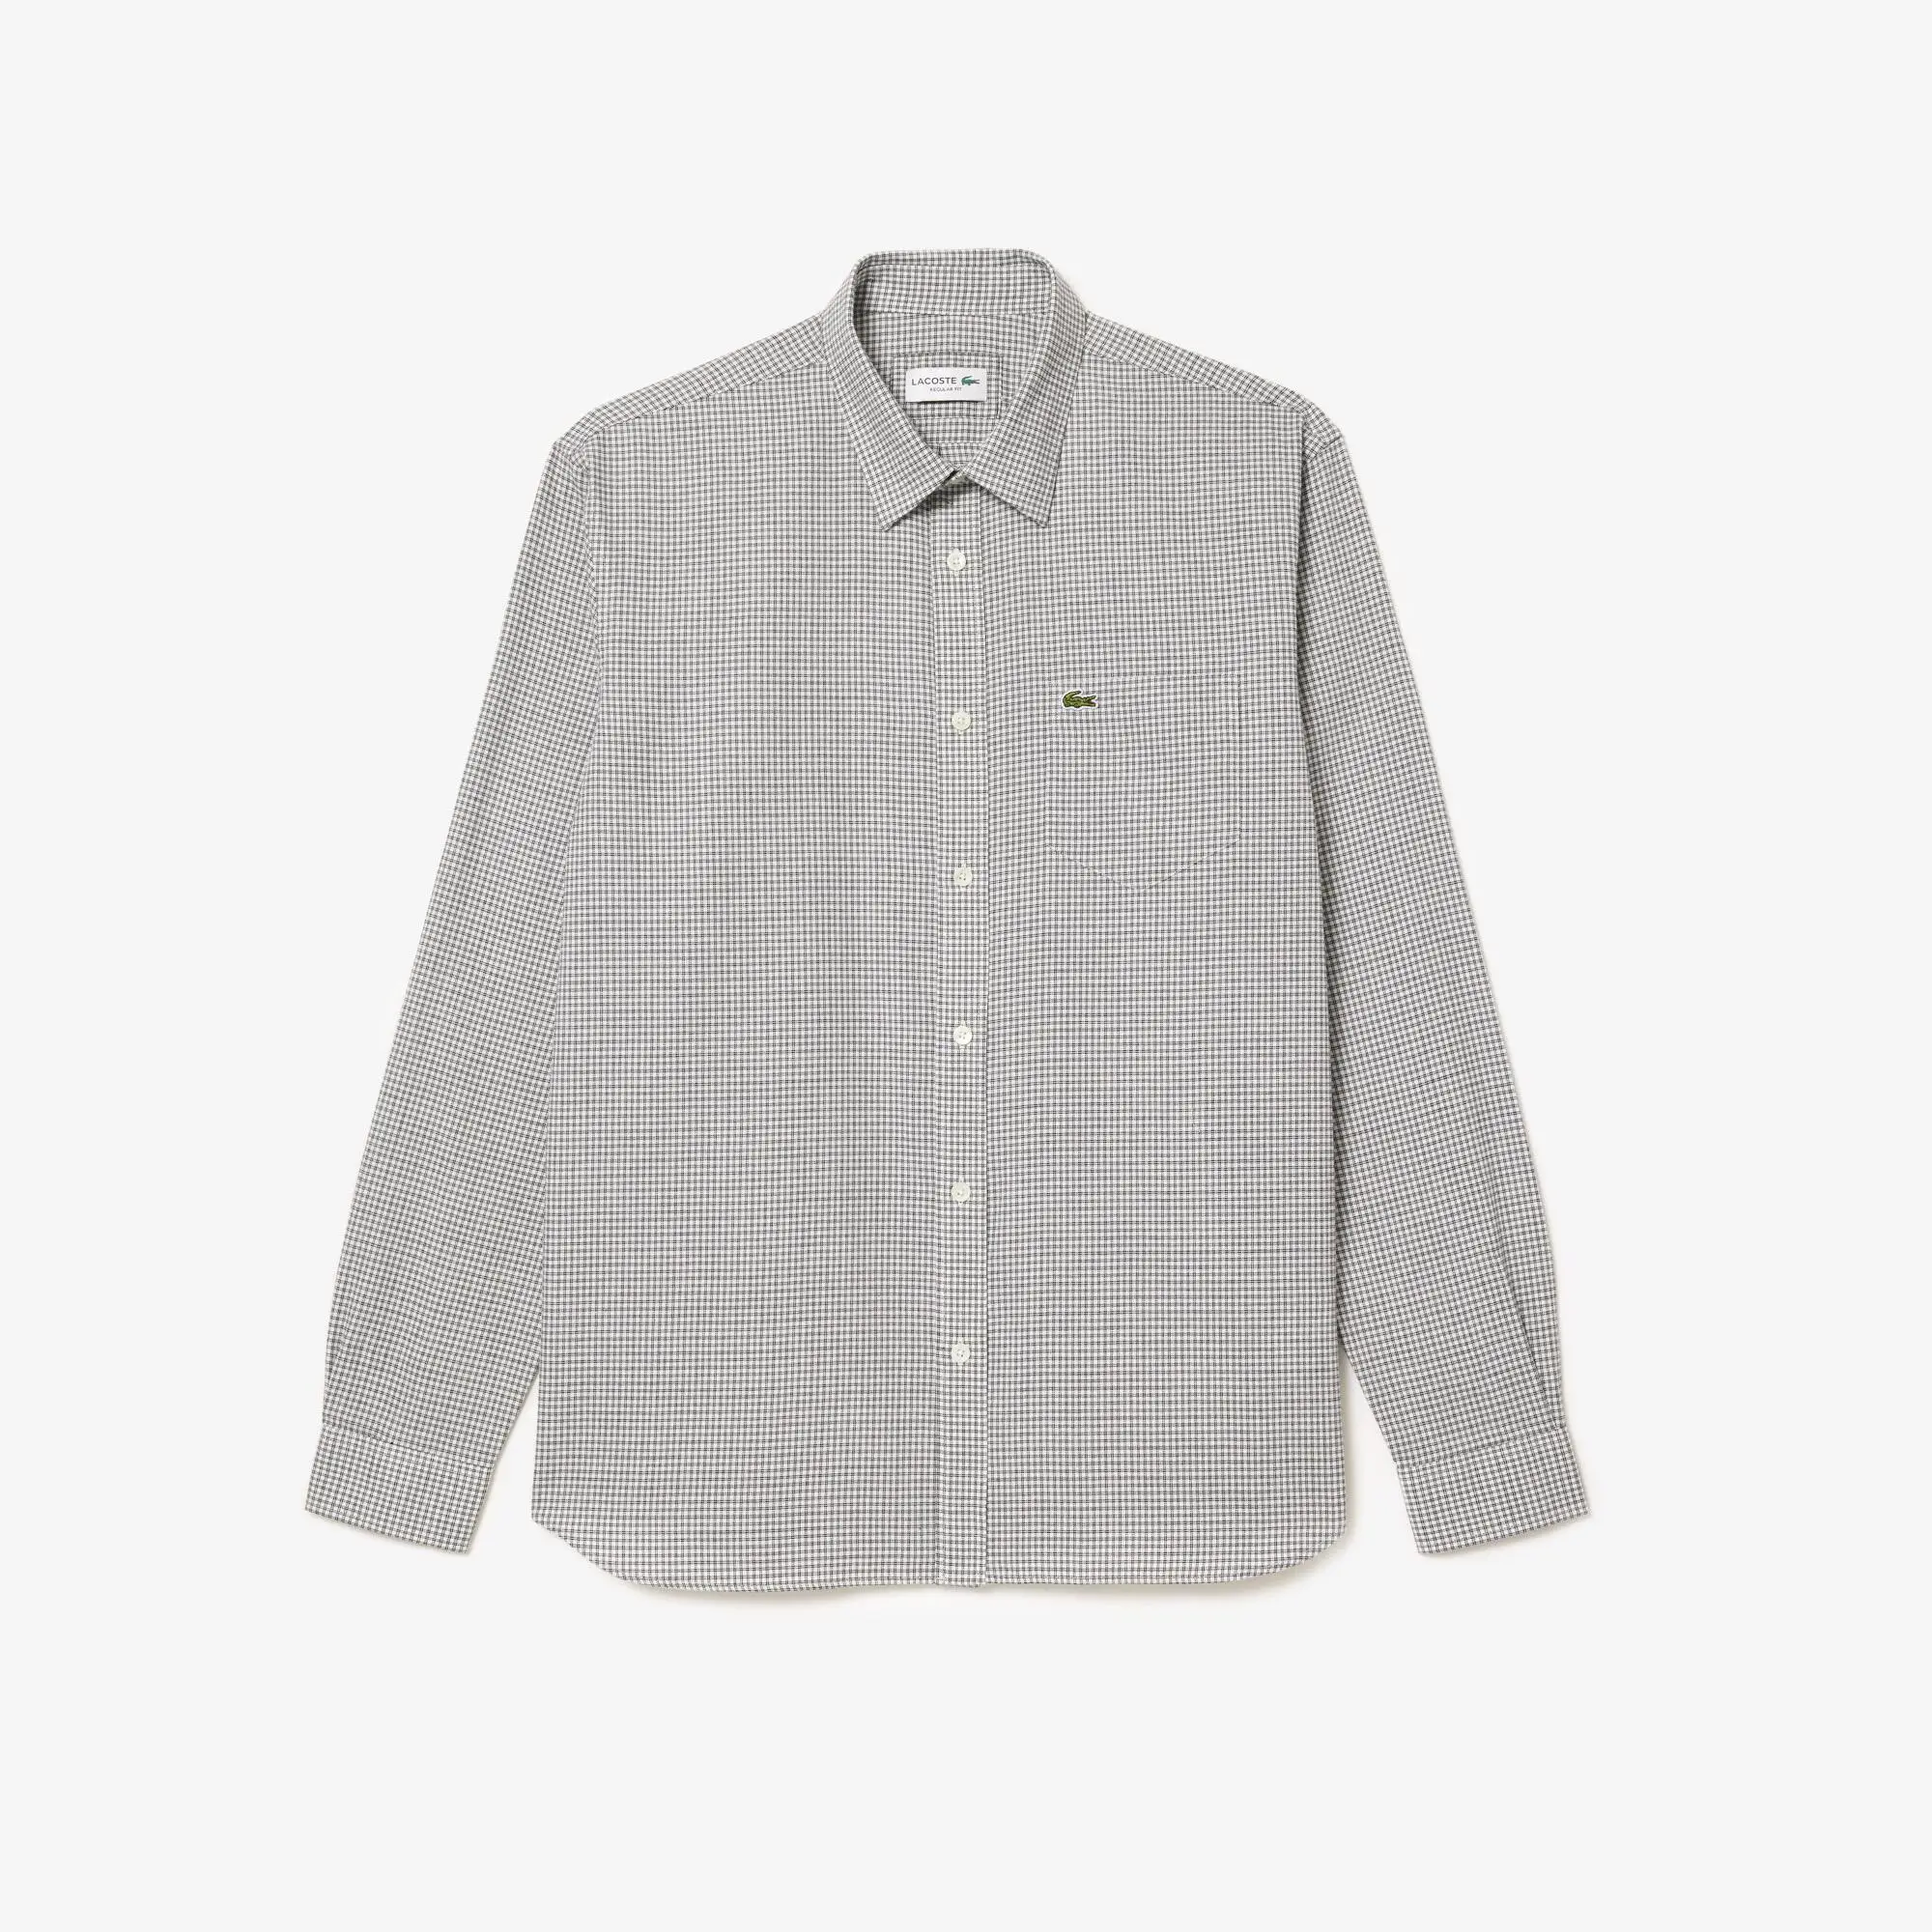 Lacoste Men's Cotton Flannel Shirt. 2